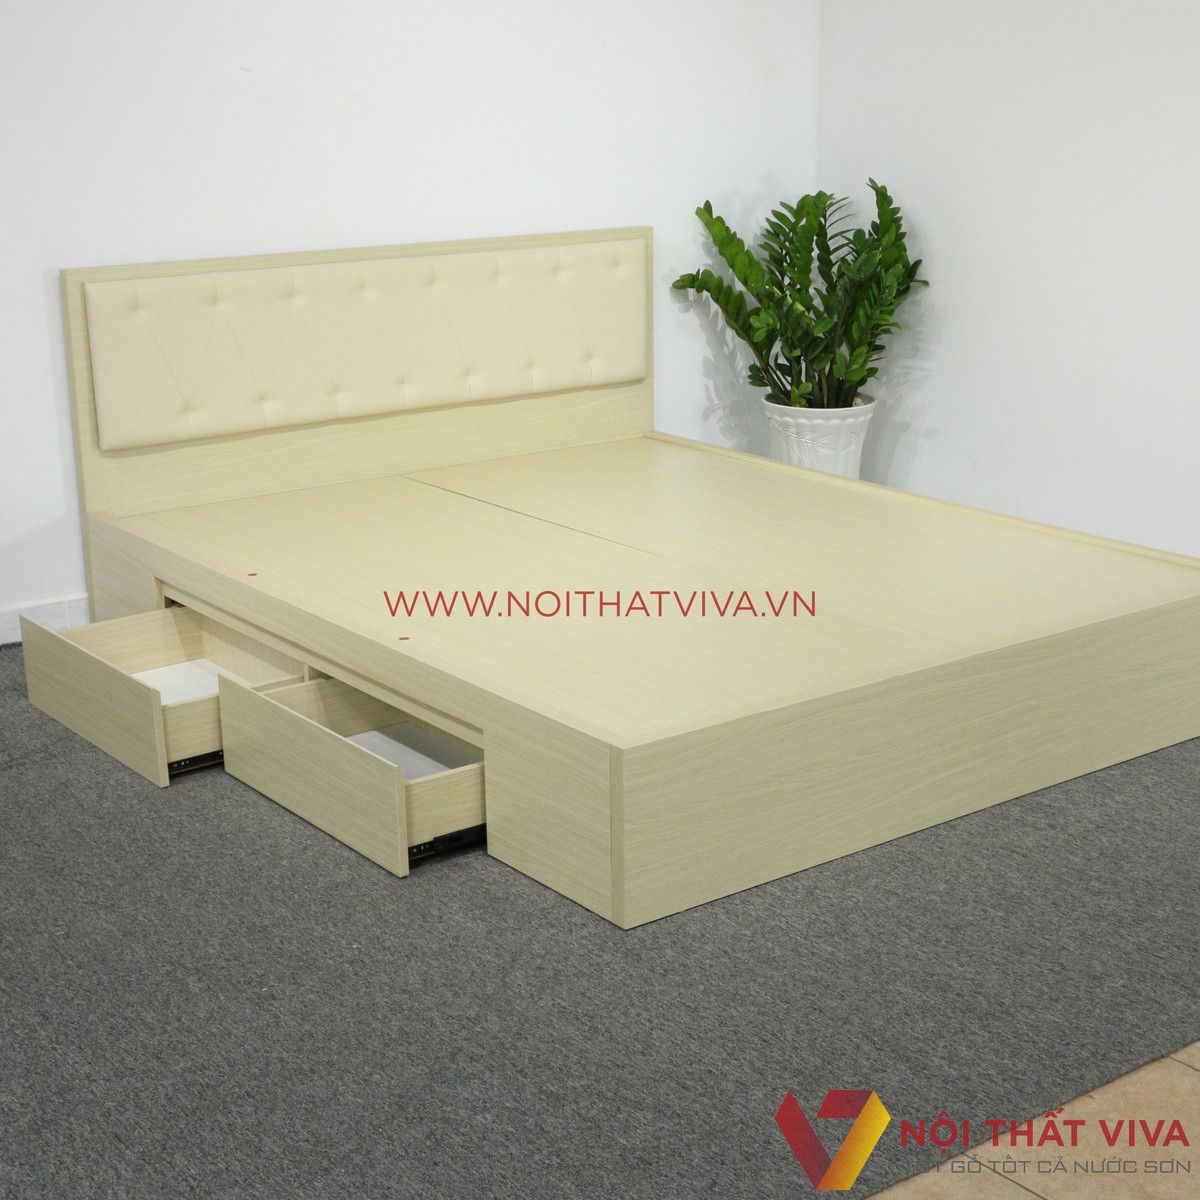 [CẬP NHẬT XU HƯỚNG] Giường ngủ gỗ công nghiệp MDF - Lựa chọn mang đến phòng ngủ hiện đại, bắt mắt